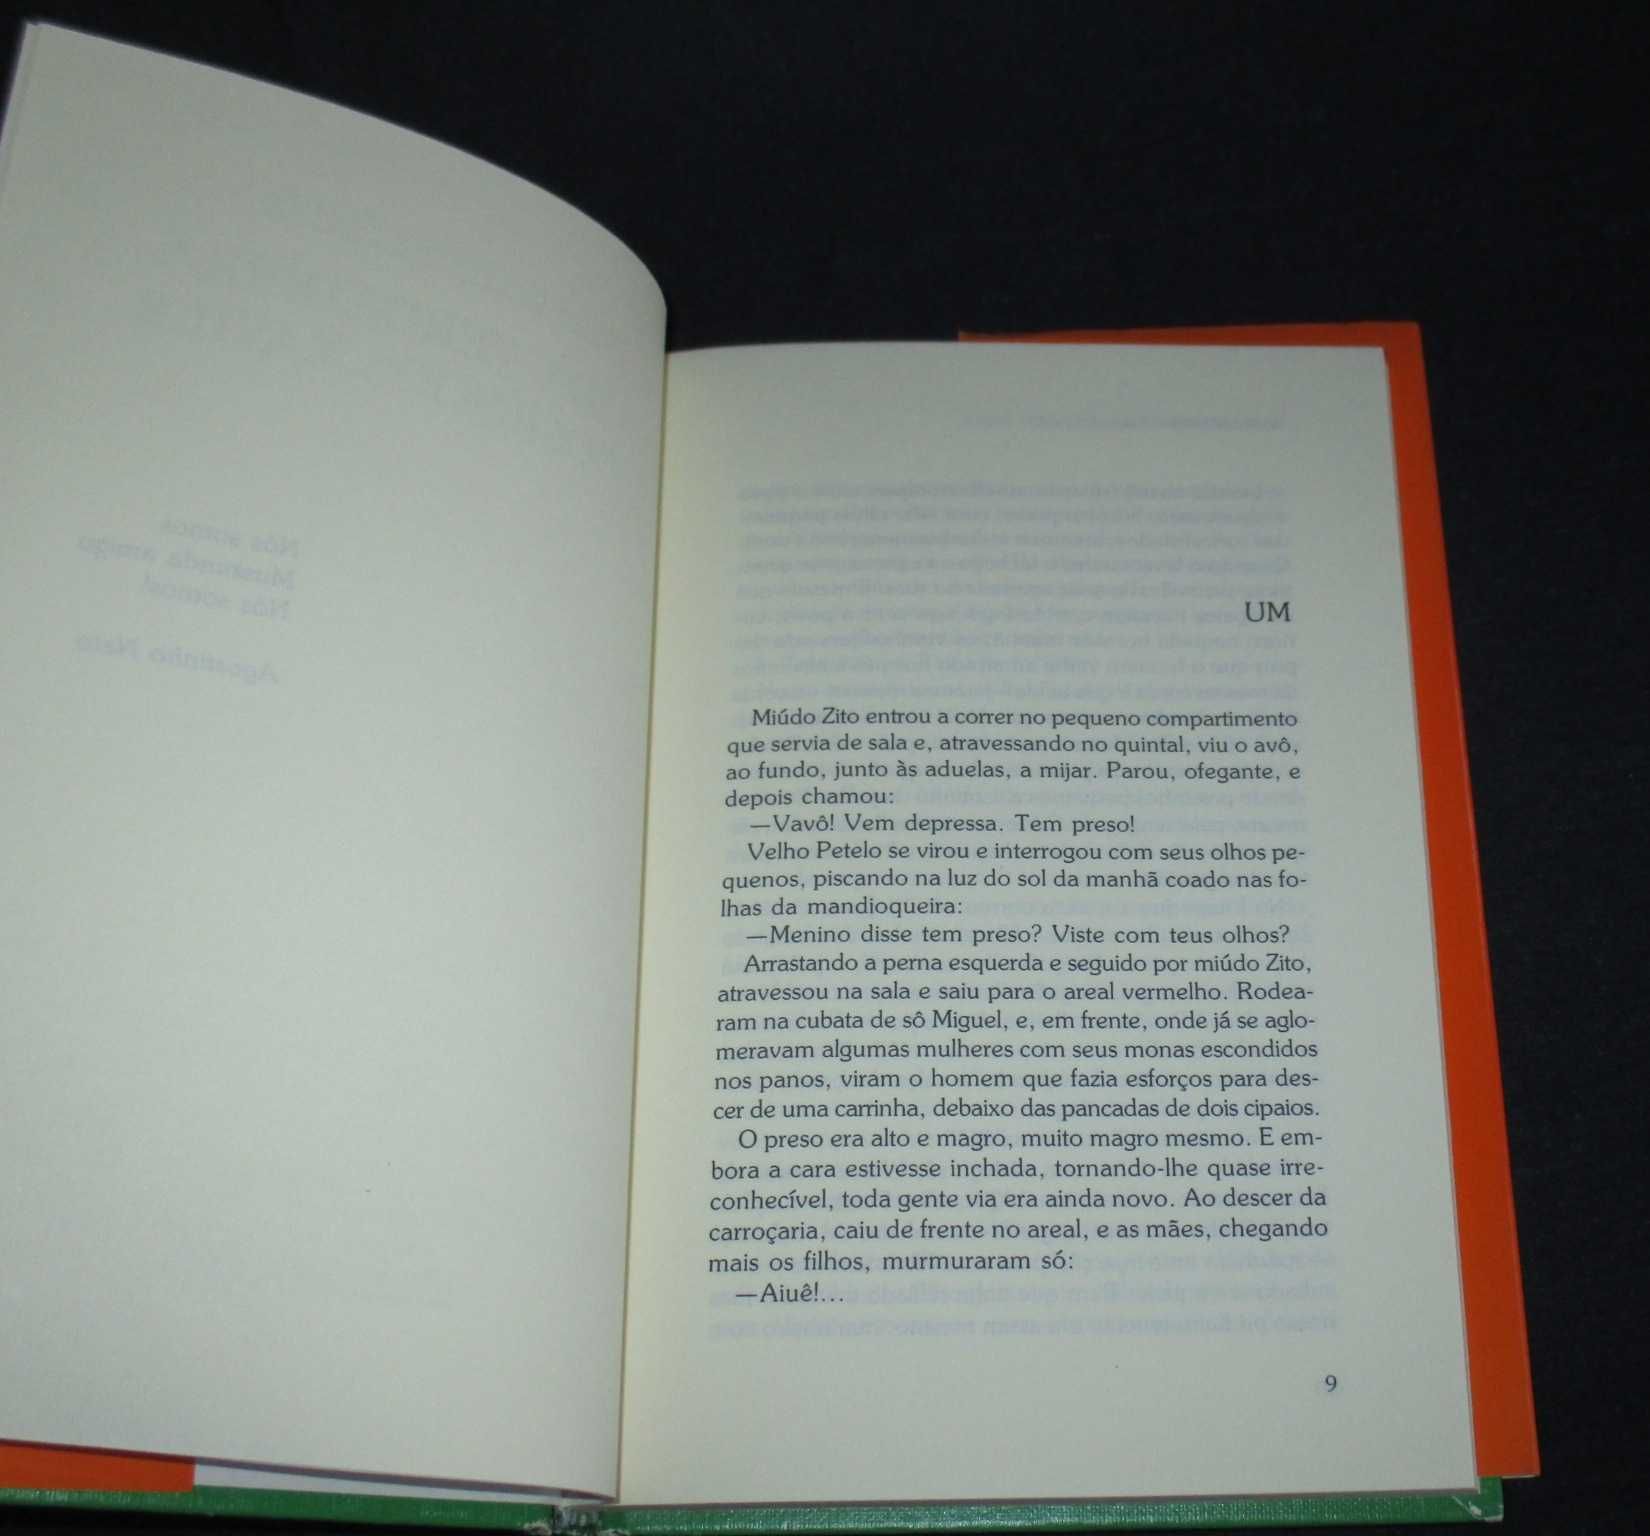 Livro A Vida verdadeira de Domingos Xavier José Luandino Vieira 1989